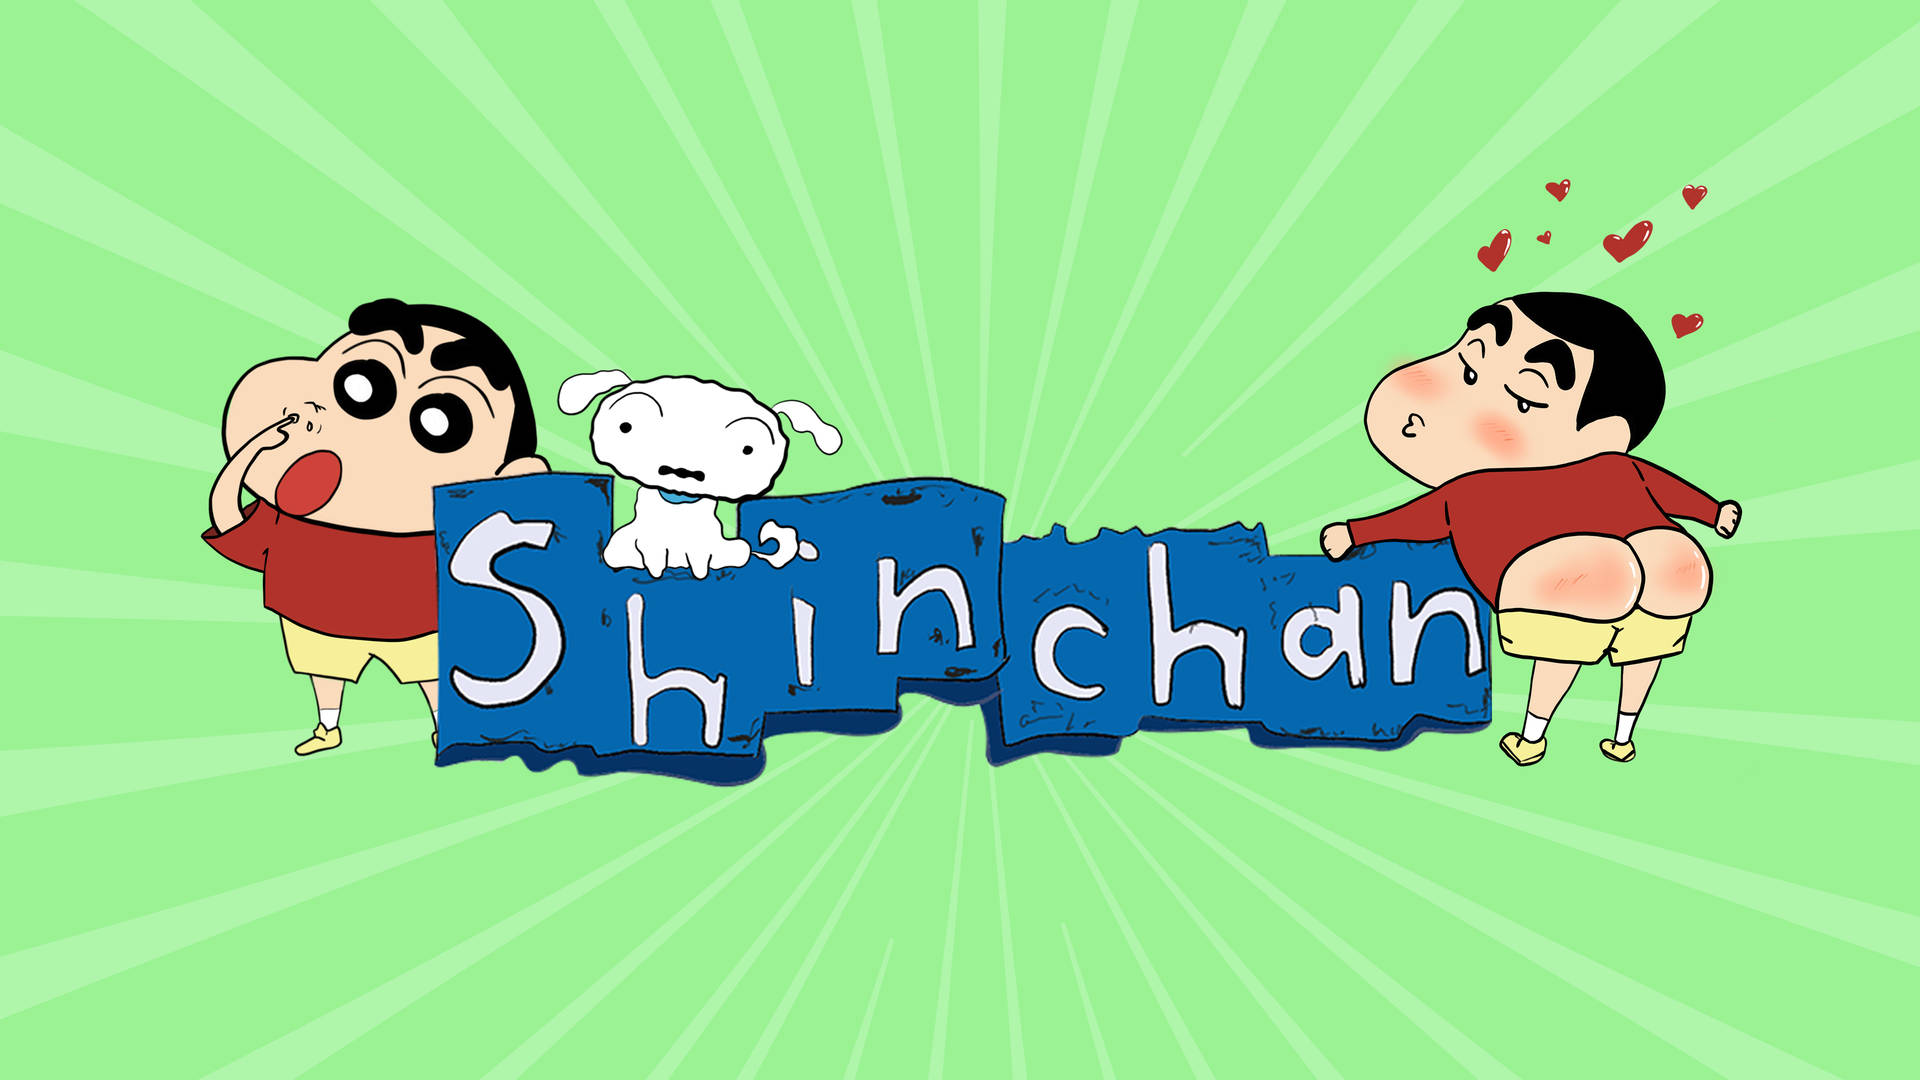 Classic Shin Chan Cartoon Background